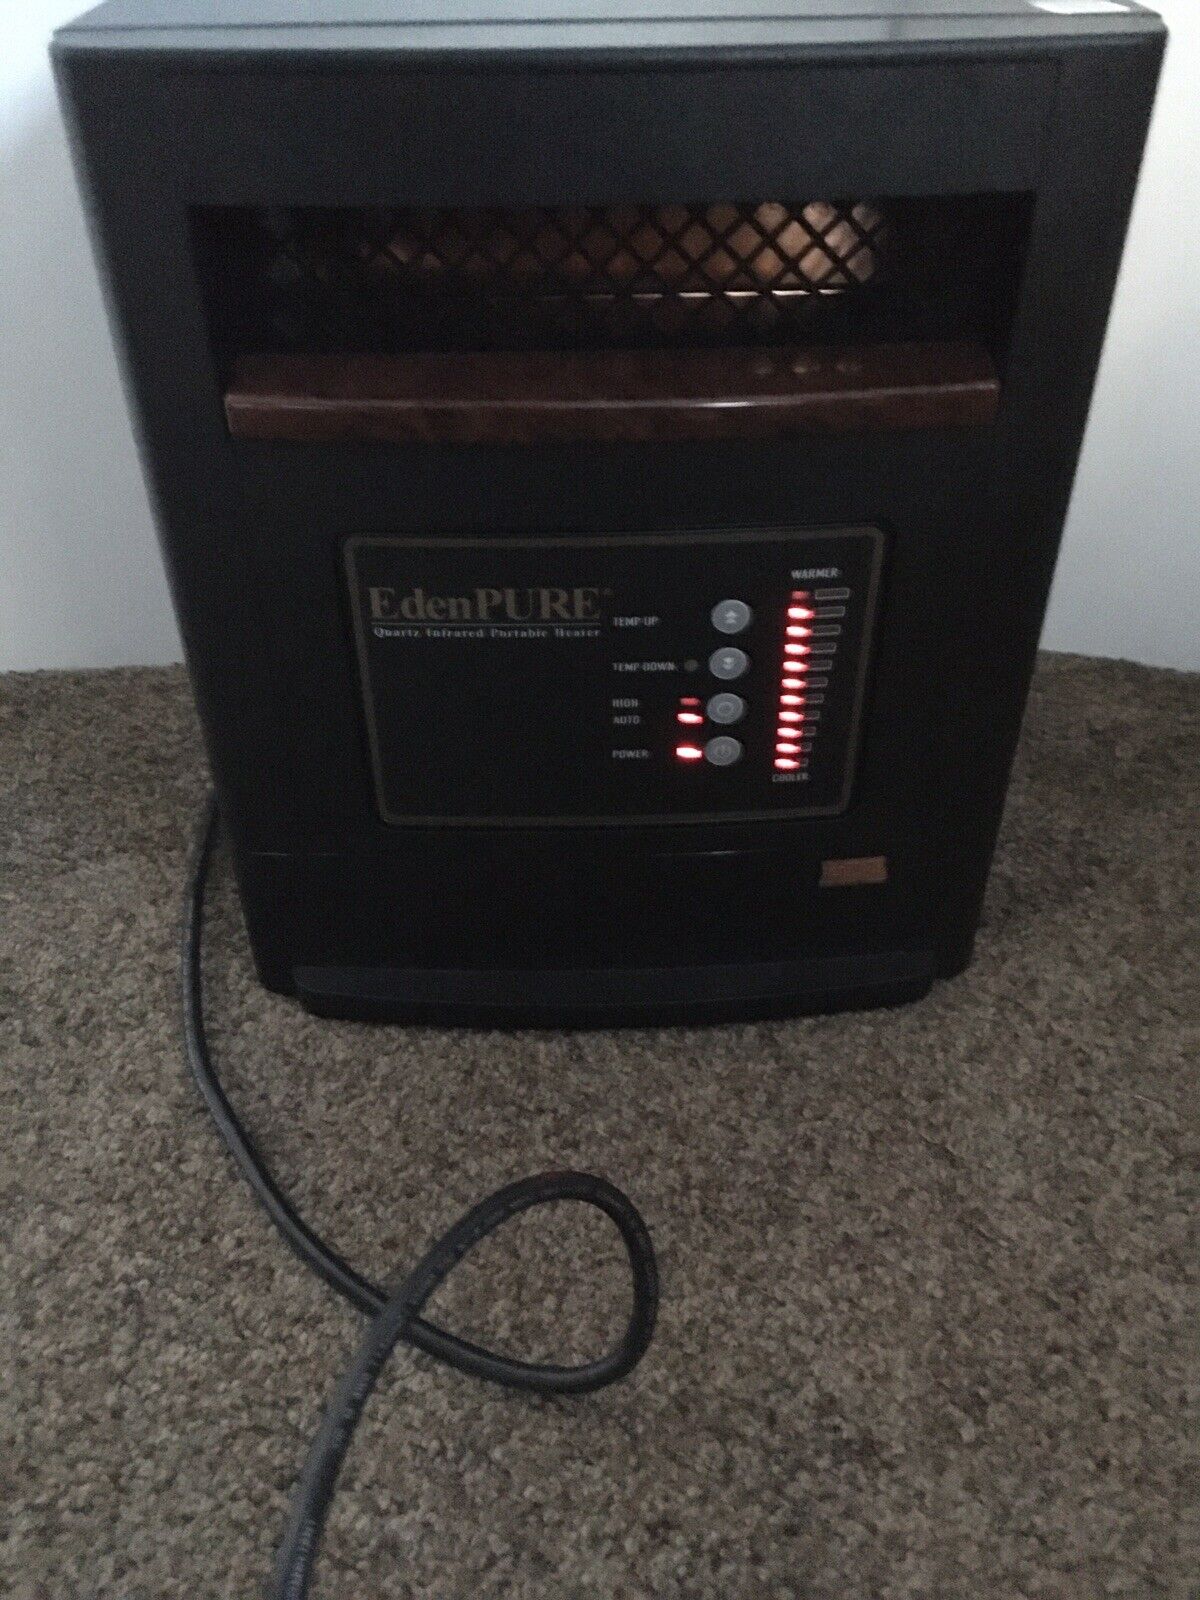 EdenPure Quartz Infrared Portable Personal Heater A4887 No Remote